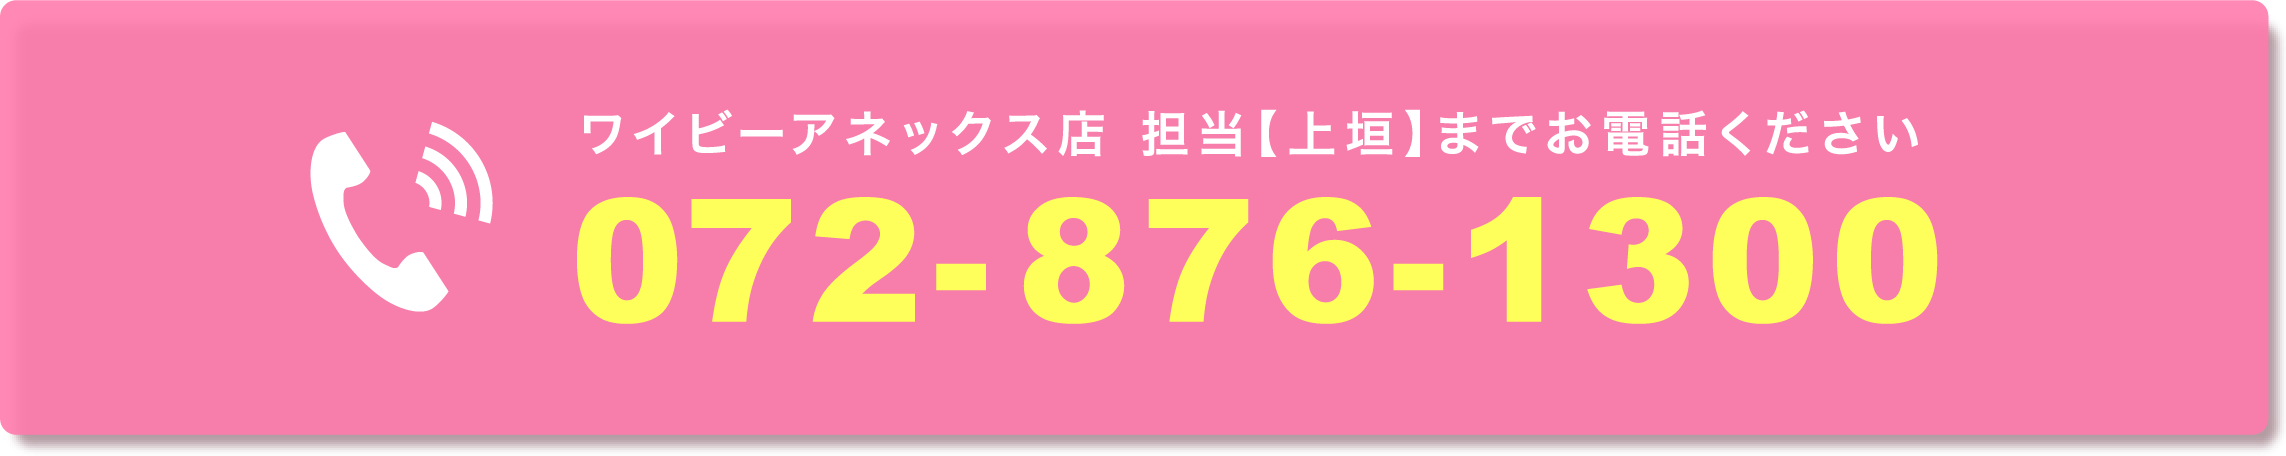 ワイビーアネックス店 担当【上垣】までお電話ください 072-876-1300